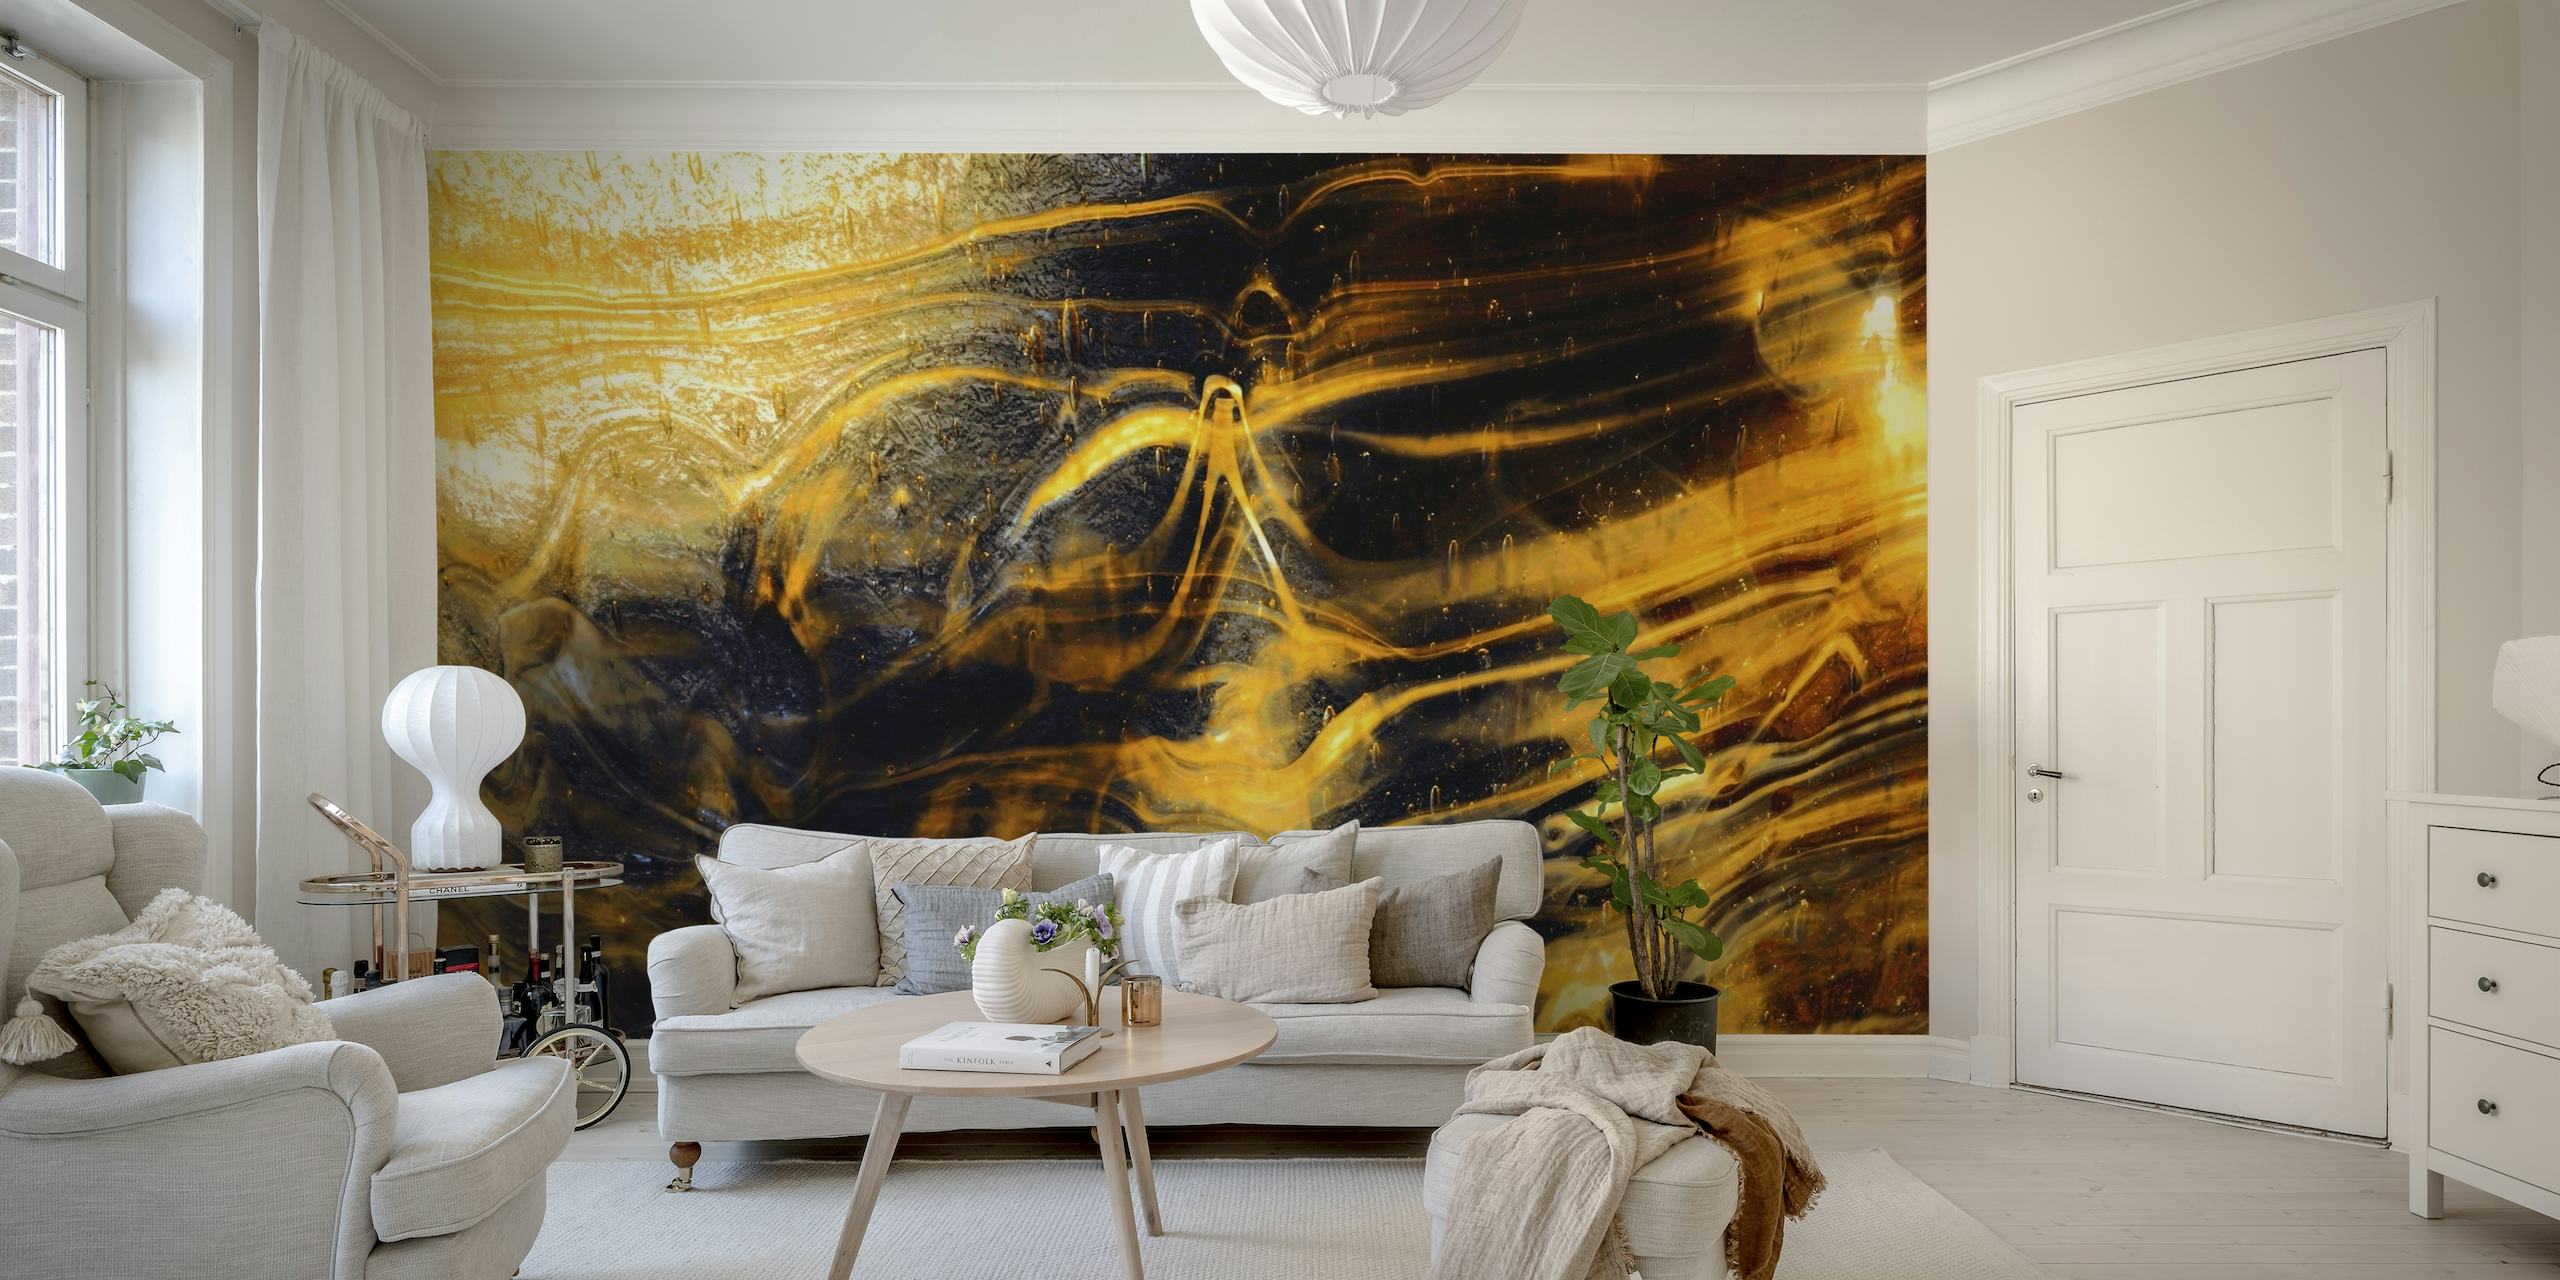 Elegante muurschildering met gouden marmerpatroon in wervelende amber- en zwarte kleuren